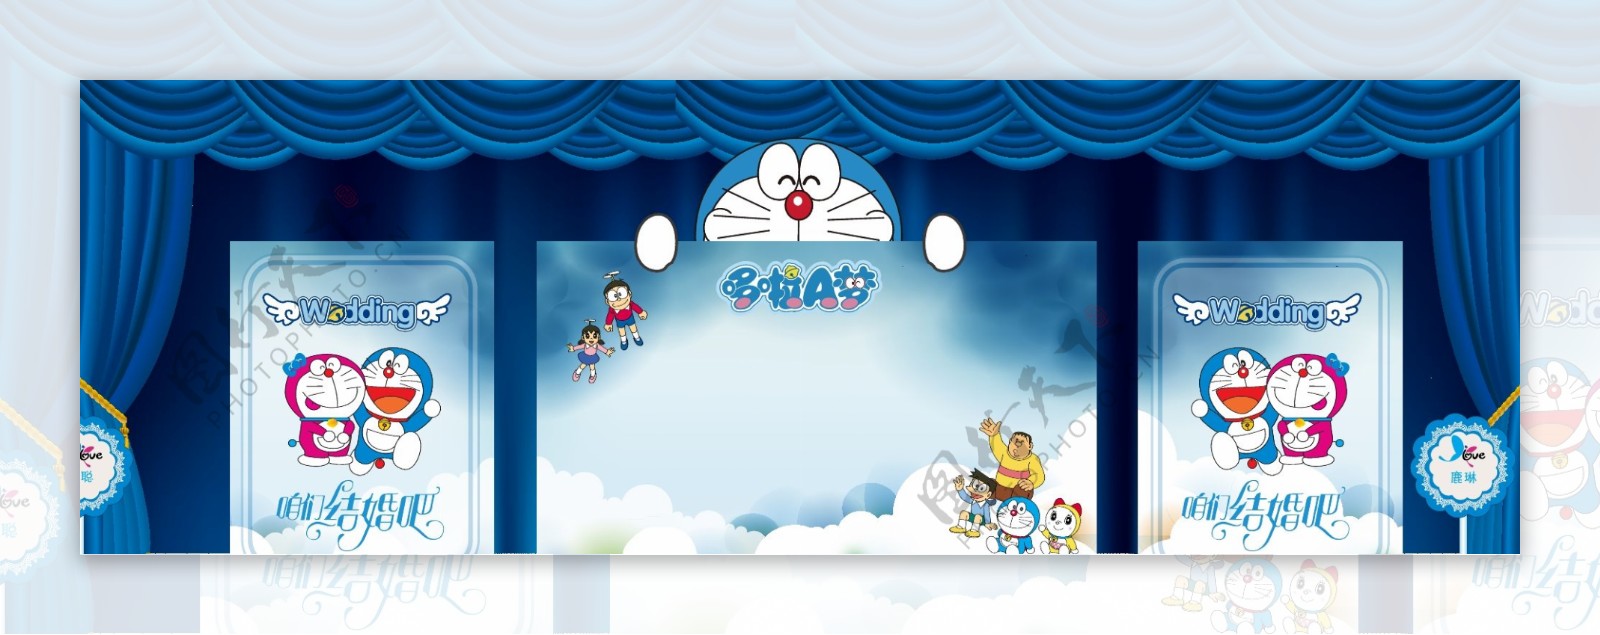 哆啦A梦主题婚礼会场布置图图片